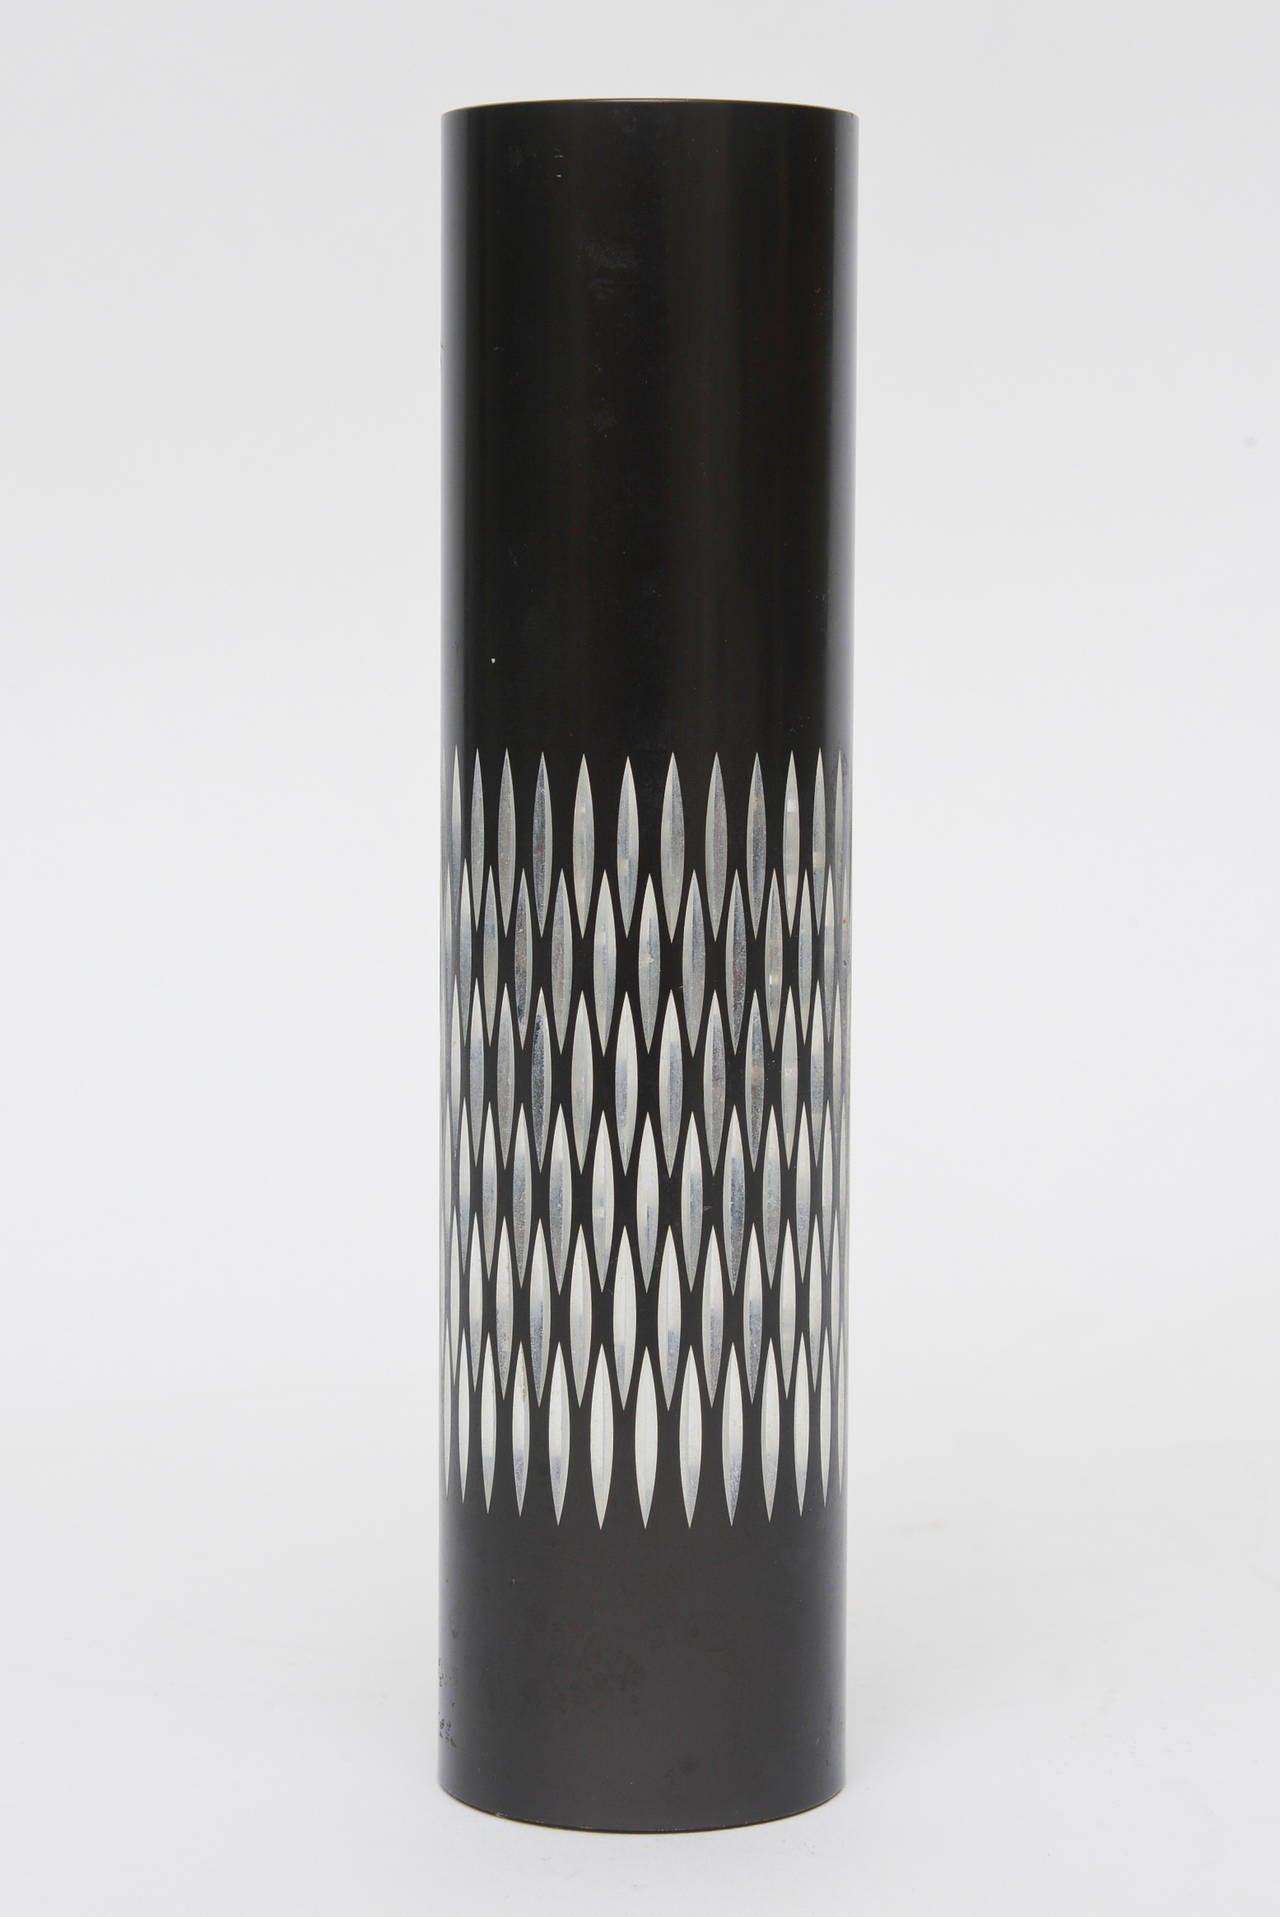 Ce merveilleux cylindre et ou vase vintage anglais graphique période en métal noir avec l'argent dentelé texturé à motif de diamant est inhabituel. Il peut être utilisé pour les pinceaux de maquillage, un accessoire de bureau, un petit vase